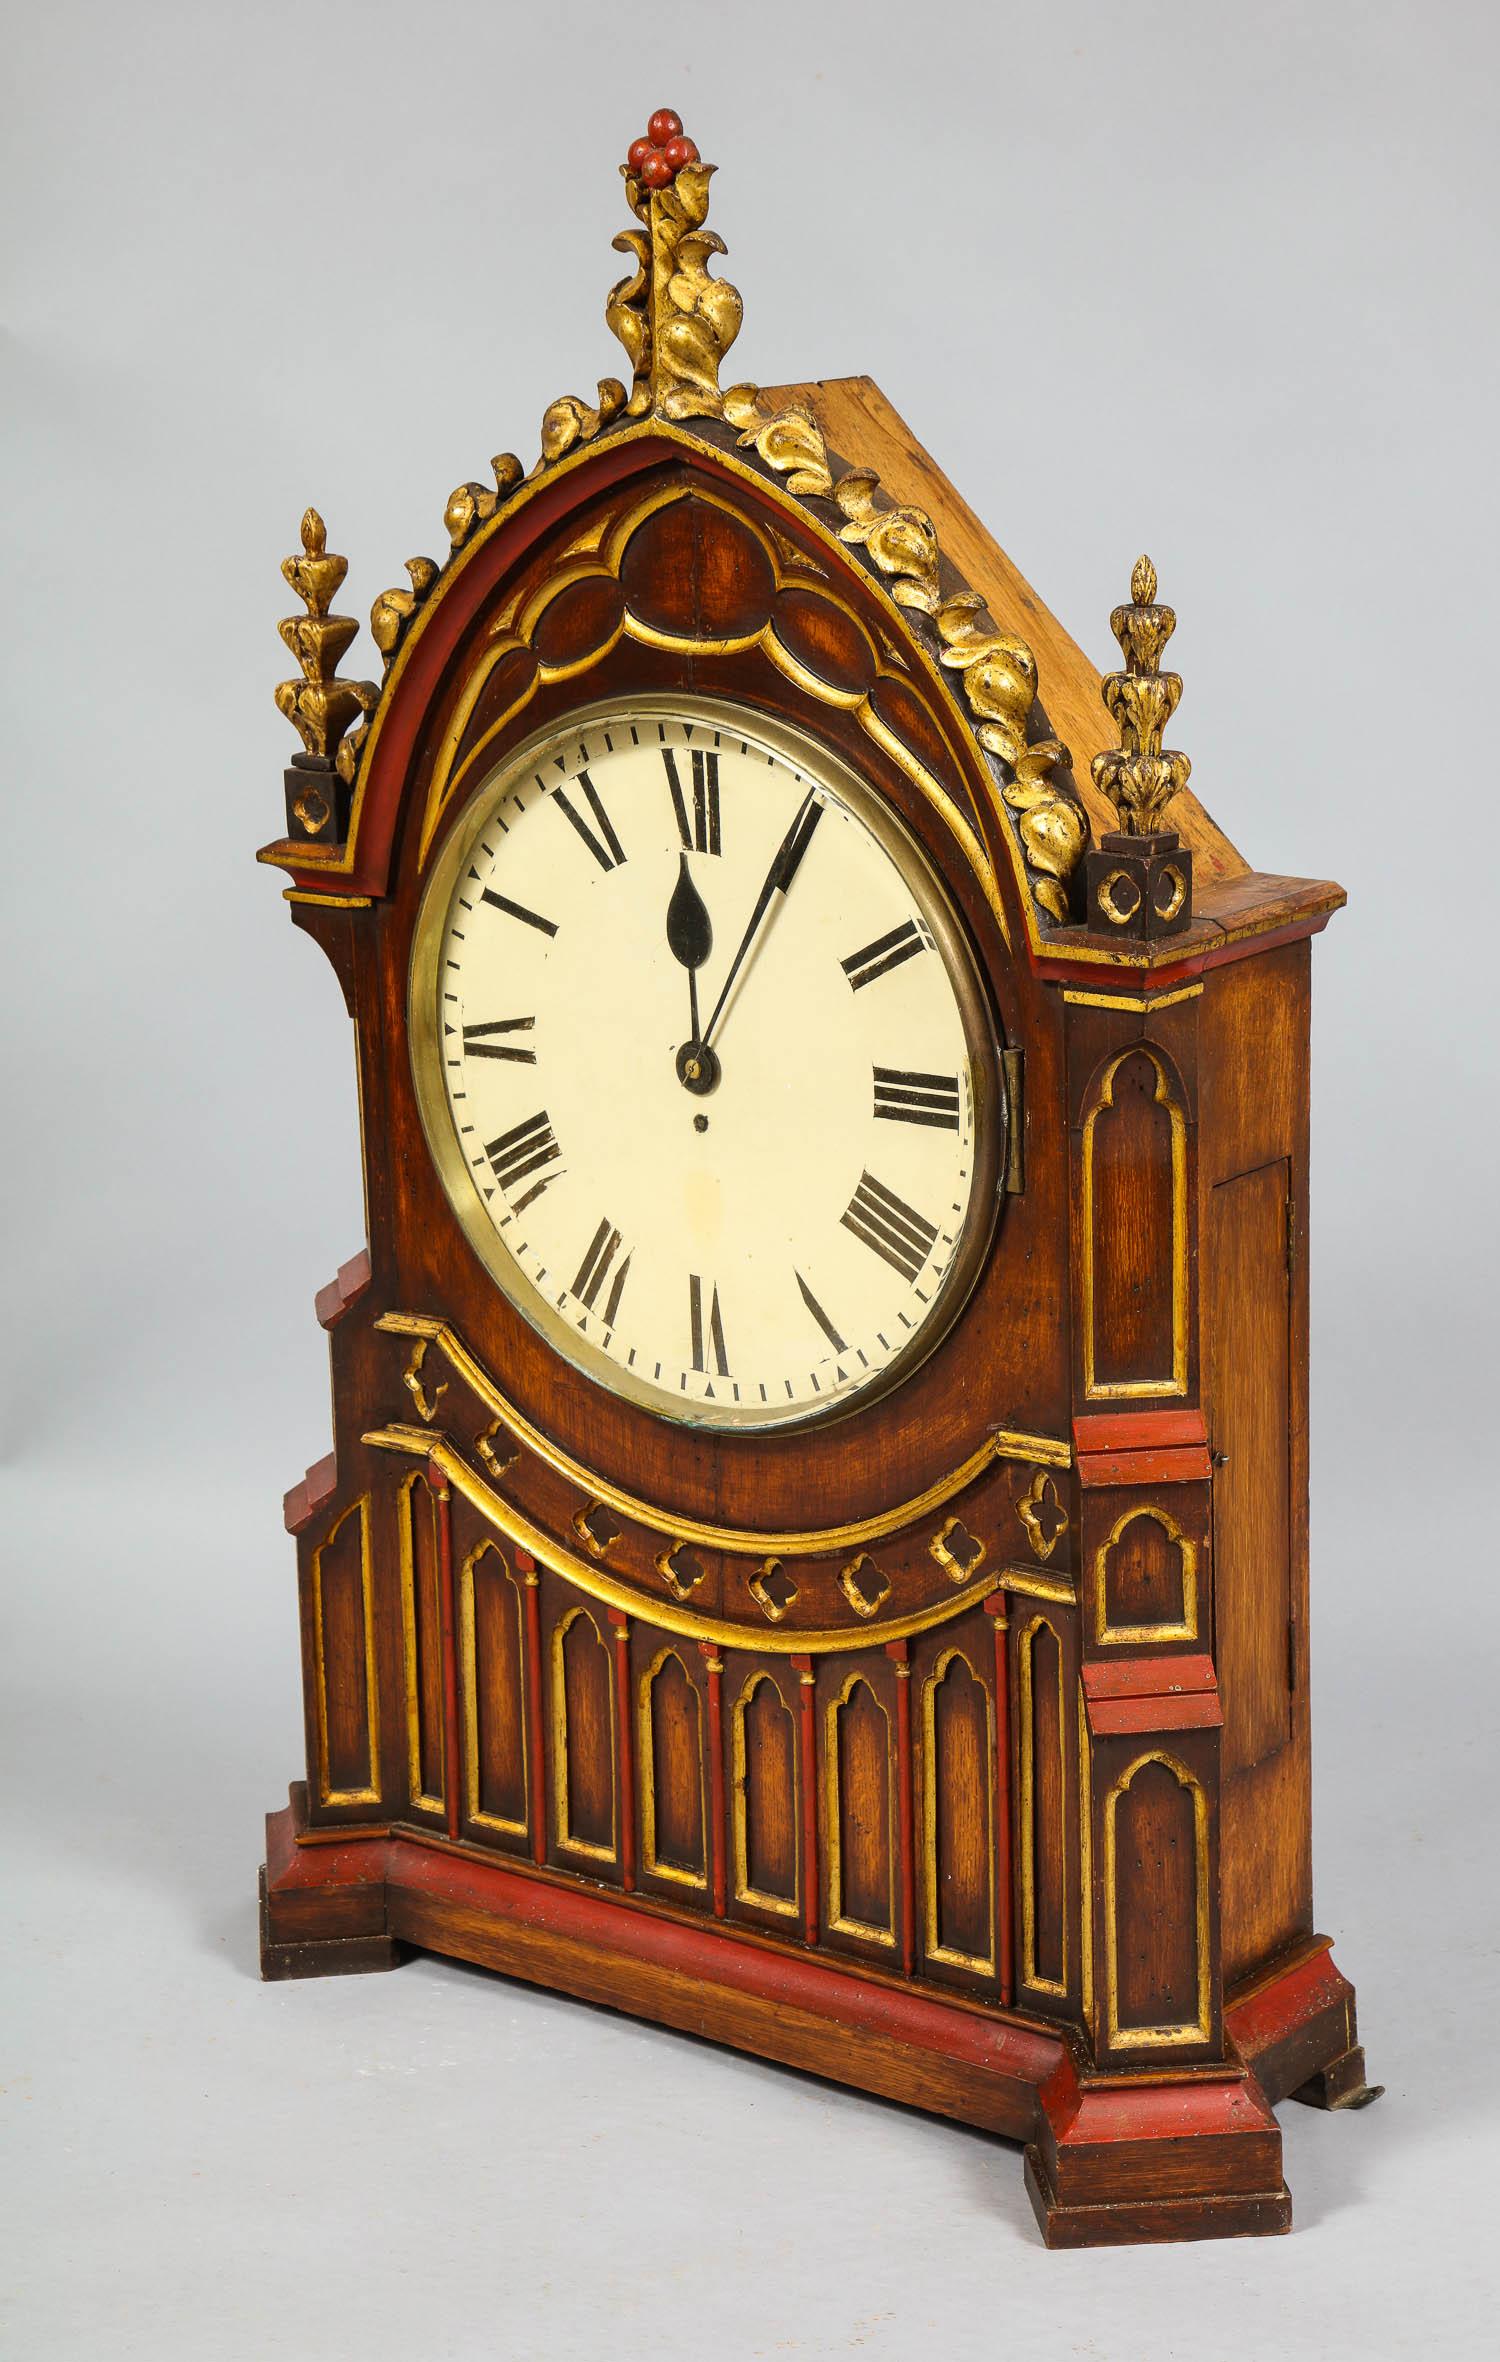 Très belle horloge gothique anglaise du début ou du milieu du XIXe siècle, d'une échelle importante, avec fronton sculpté et doré et boîtier à décor polychrome de trèfles, le mouvement est une très belle pièce d'horlogerie de 8 jours avec un